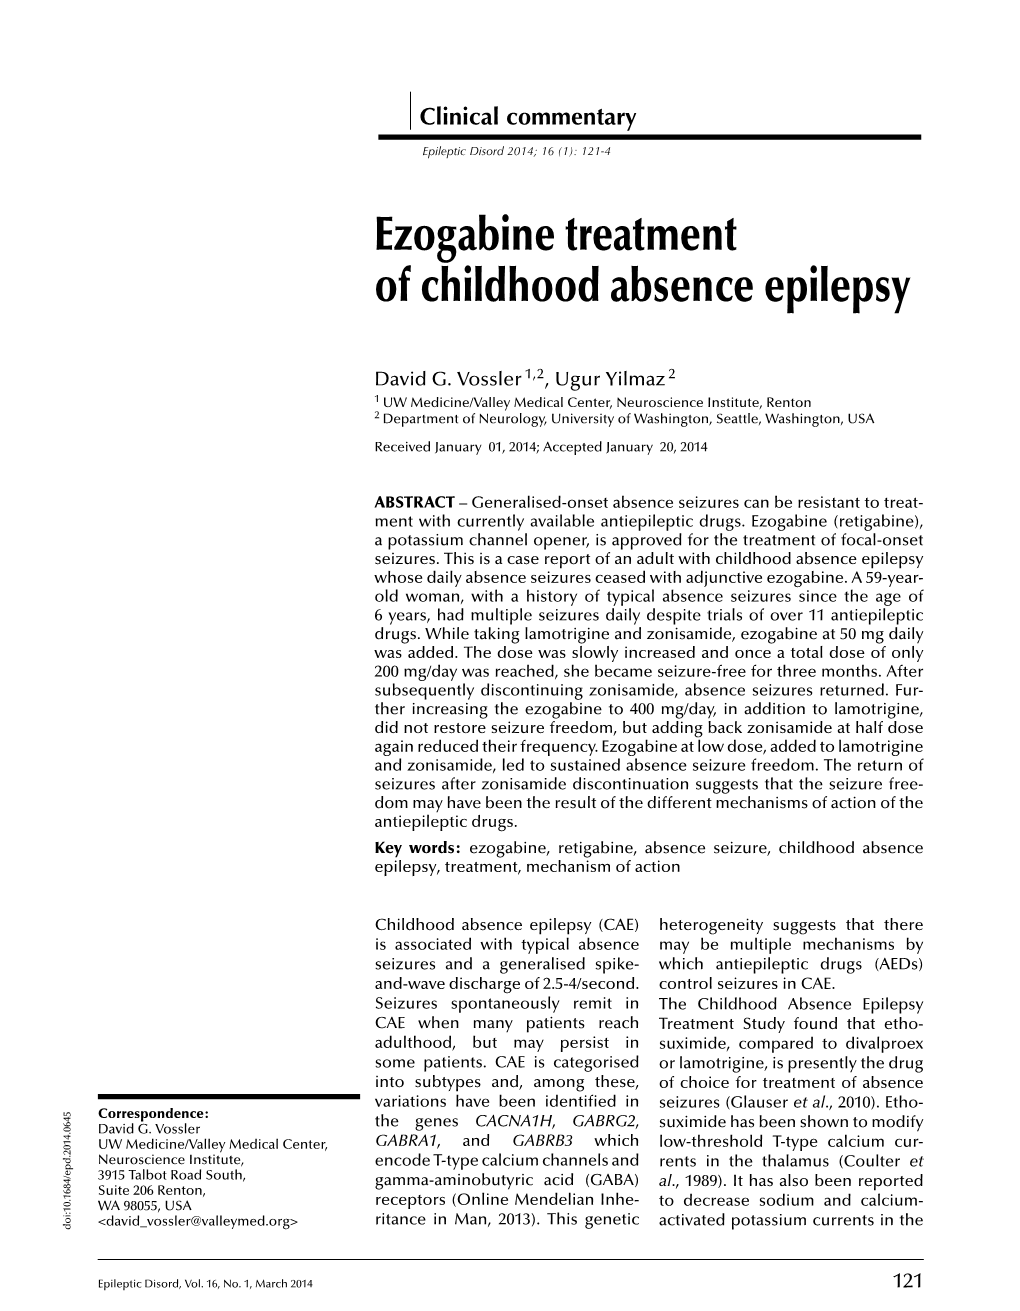 Ezogabine Treatment of Childhood Absence Epilepsy